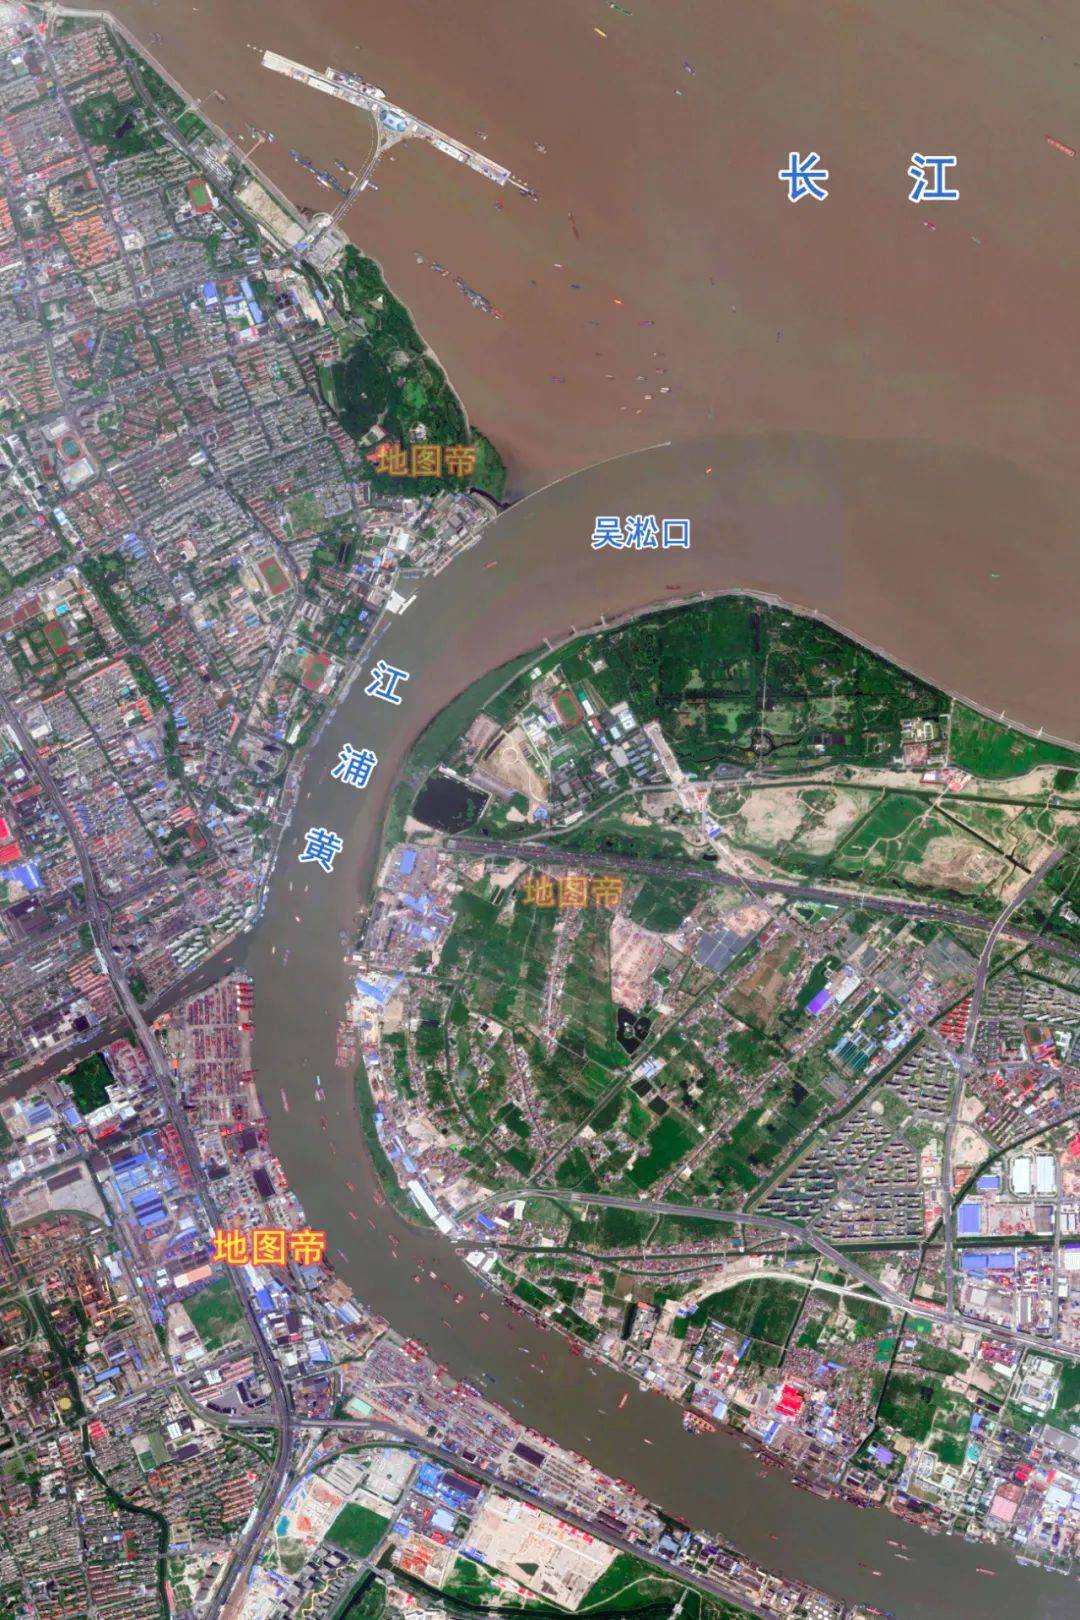 黄浦江与长江交汇地图图片